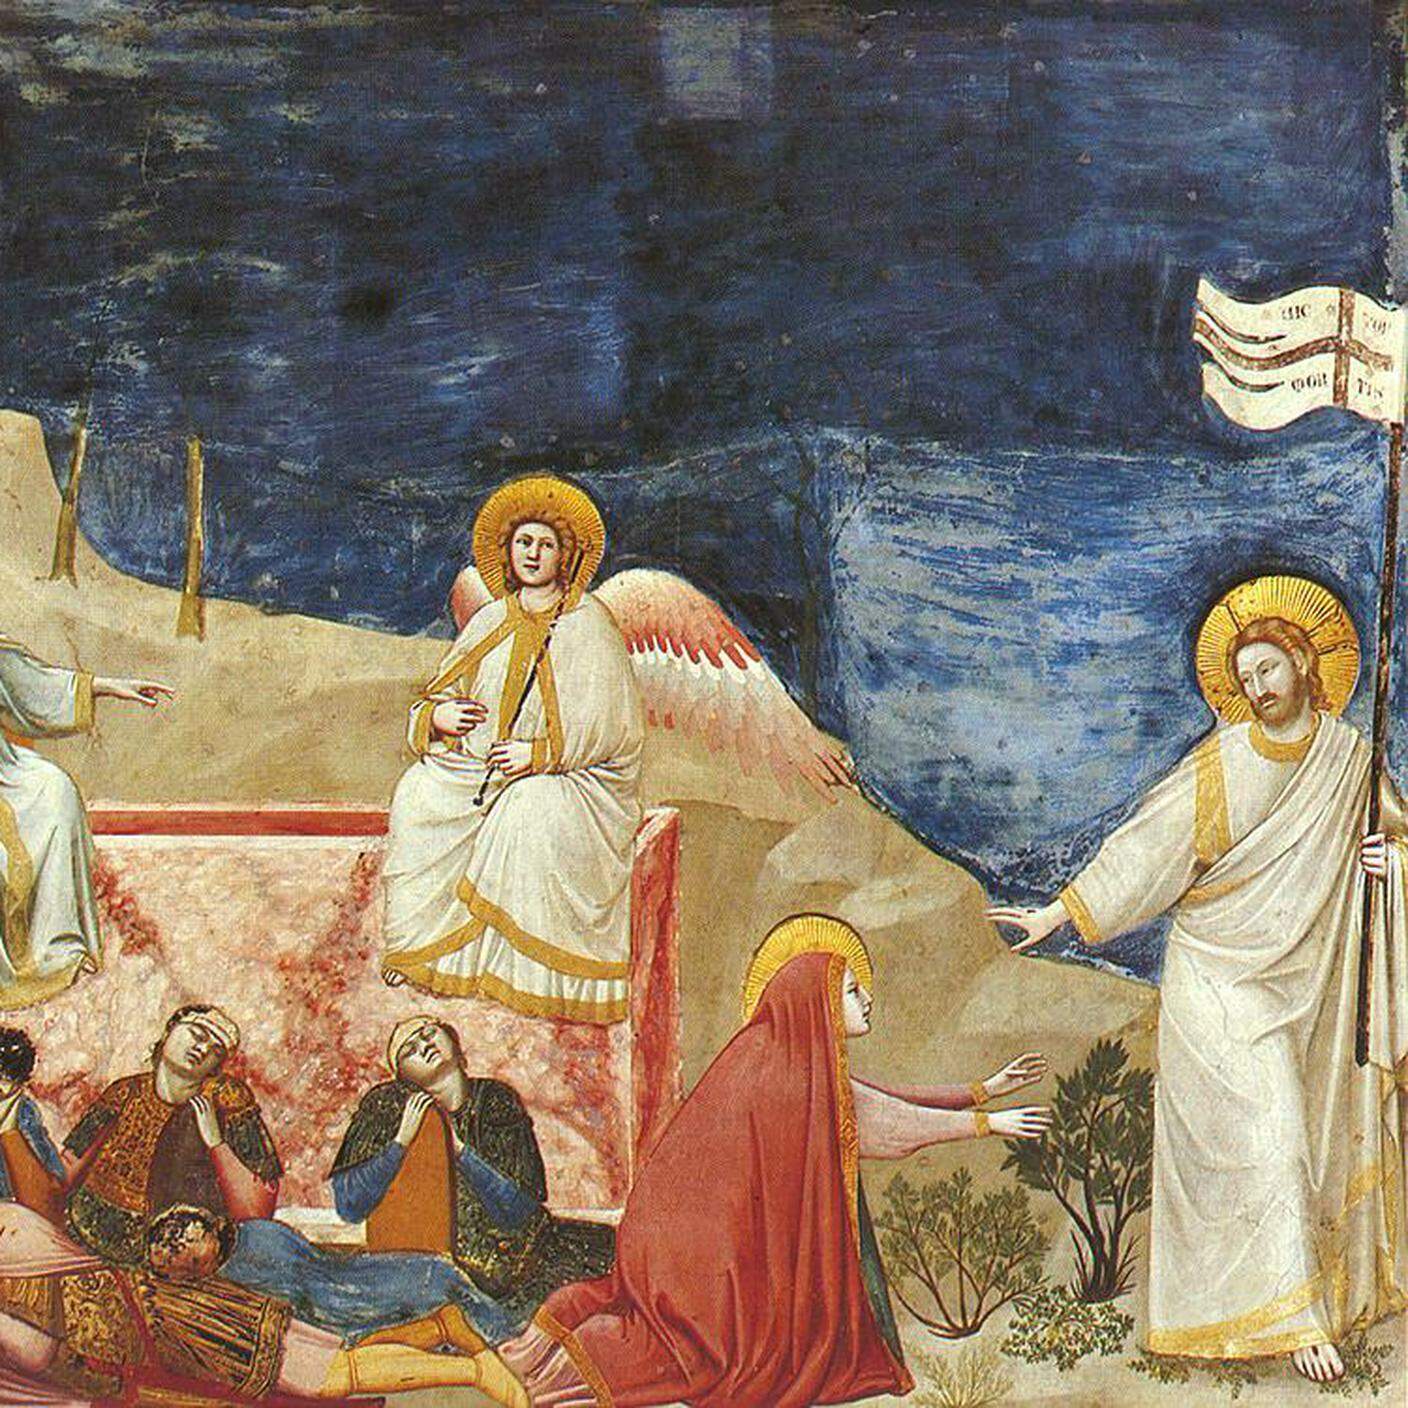 Resurrection (Noli me tangere) - Life of Christ, Giotto di Bondone